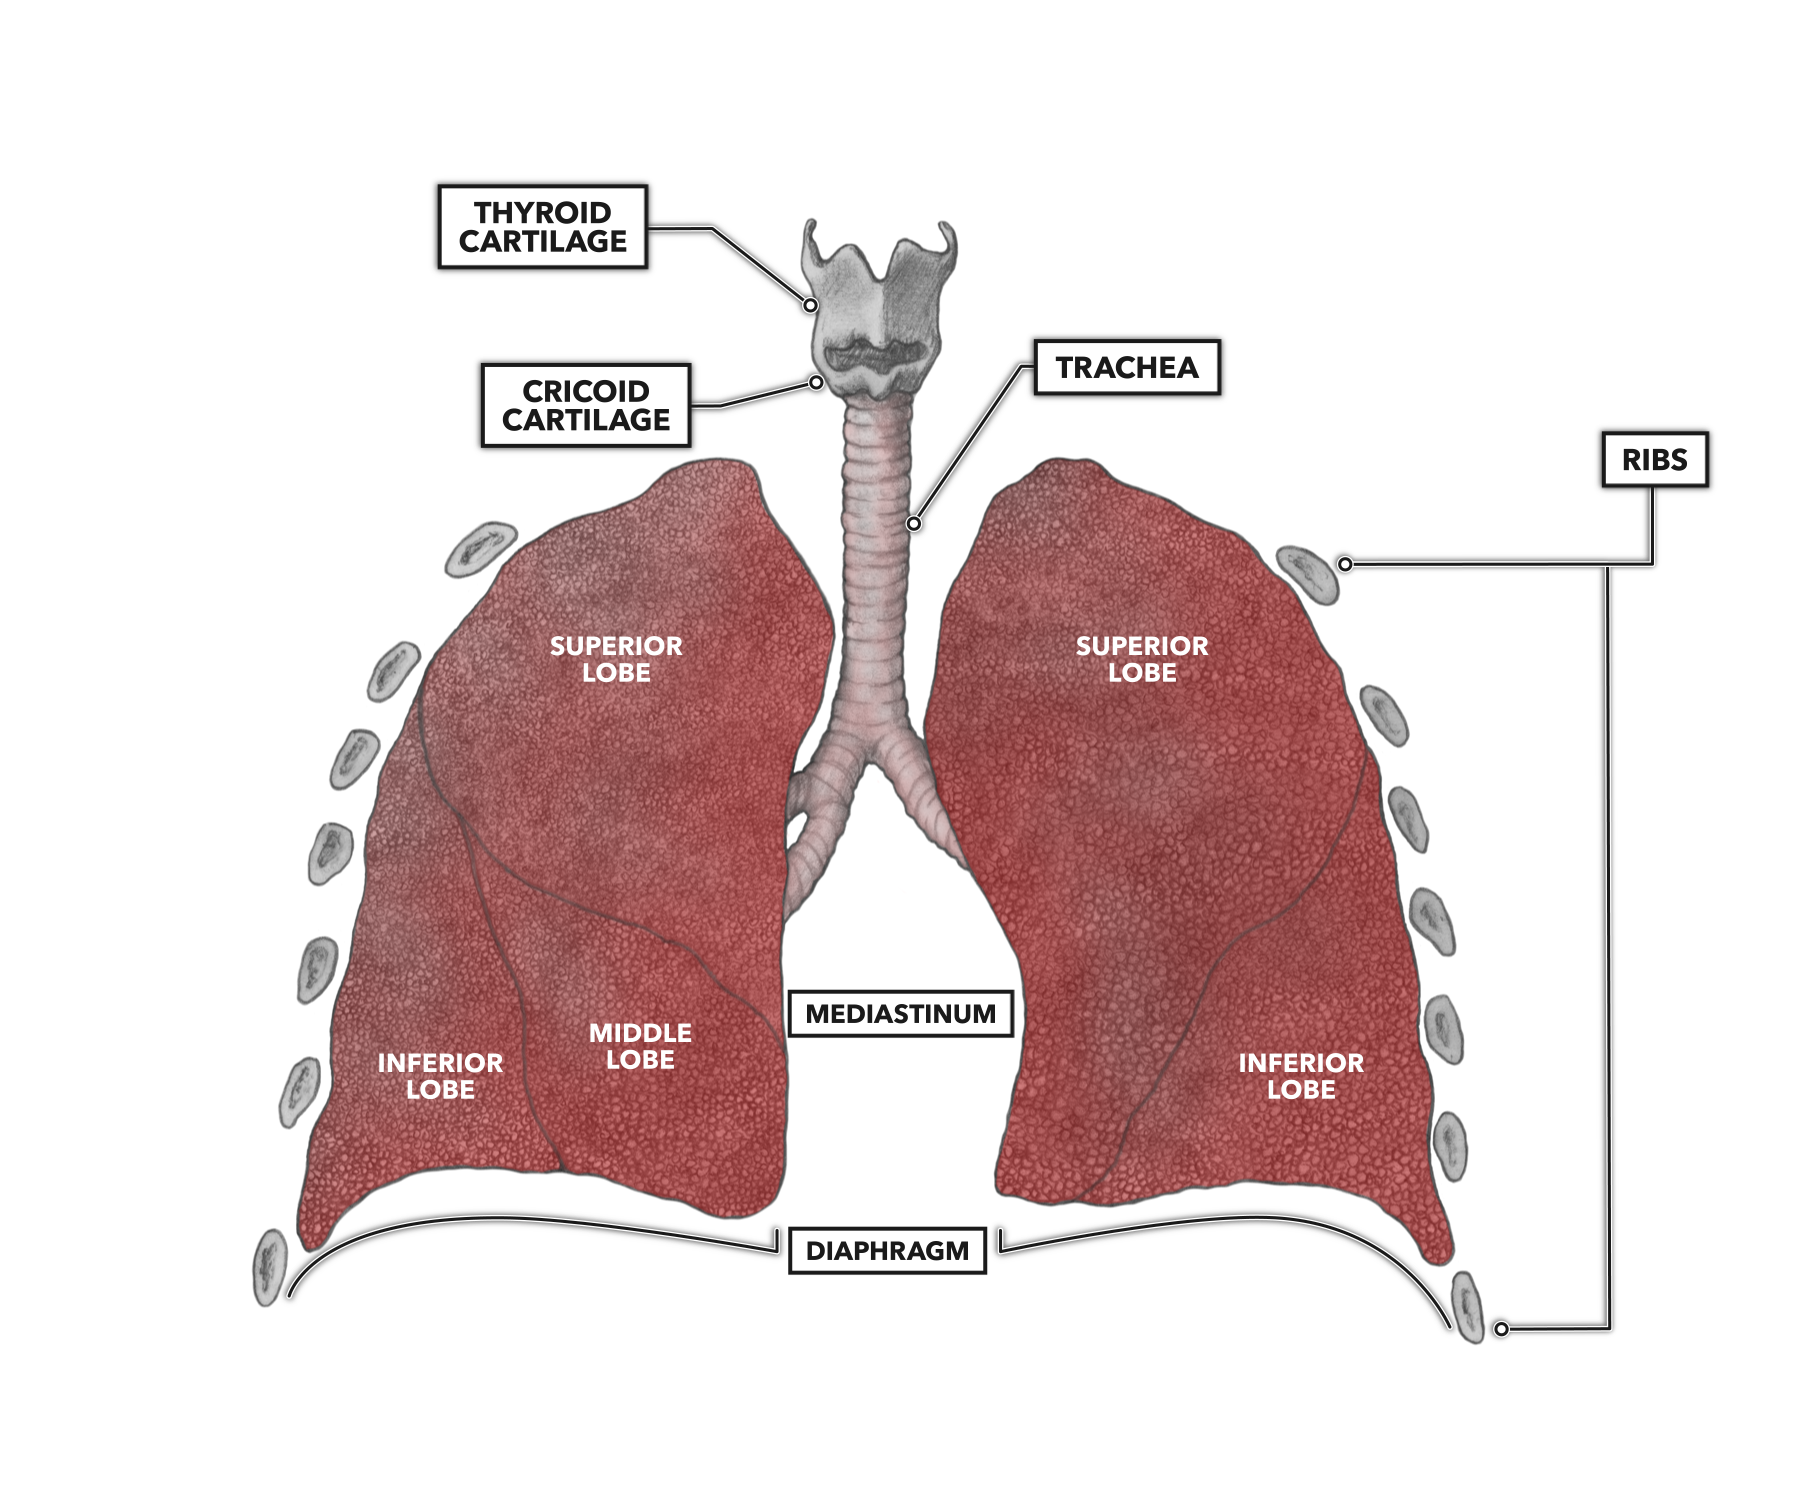 lung lobes